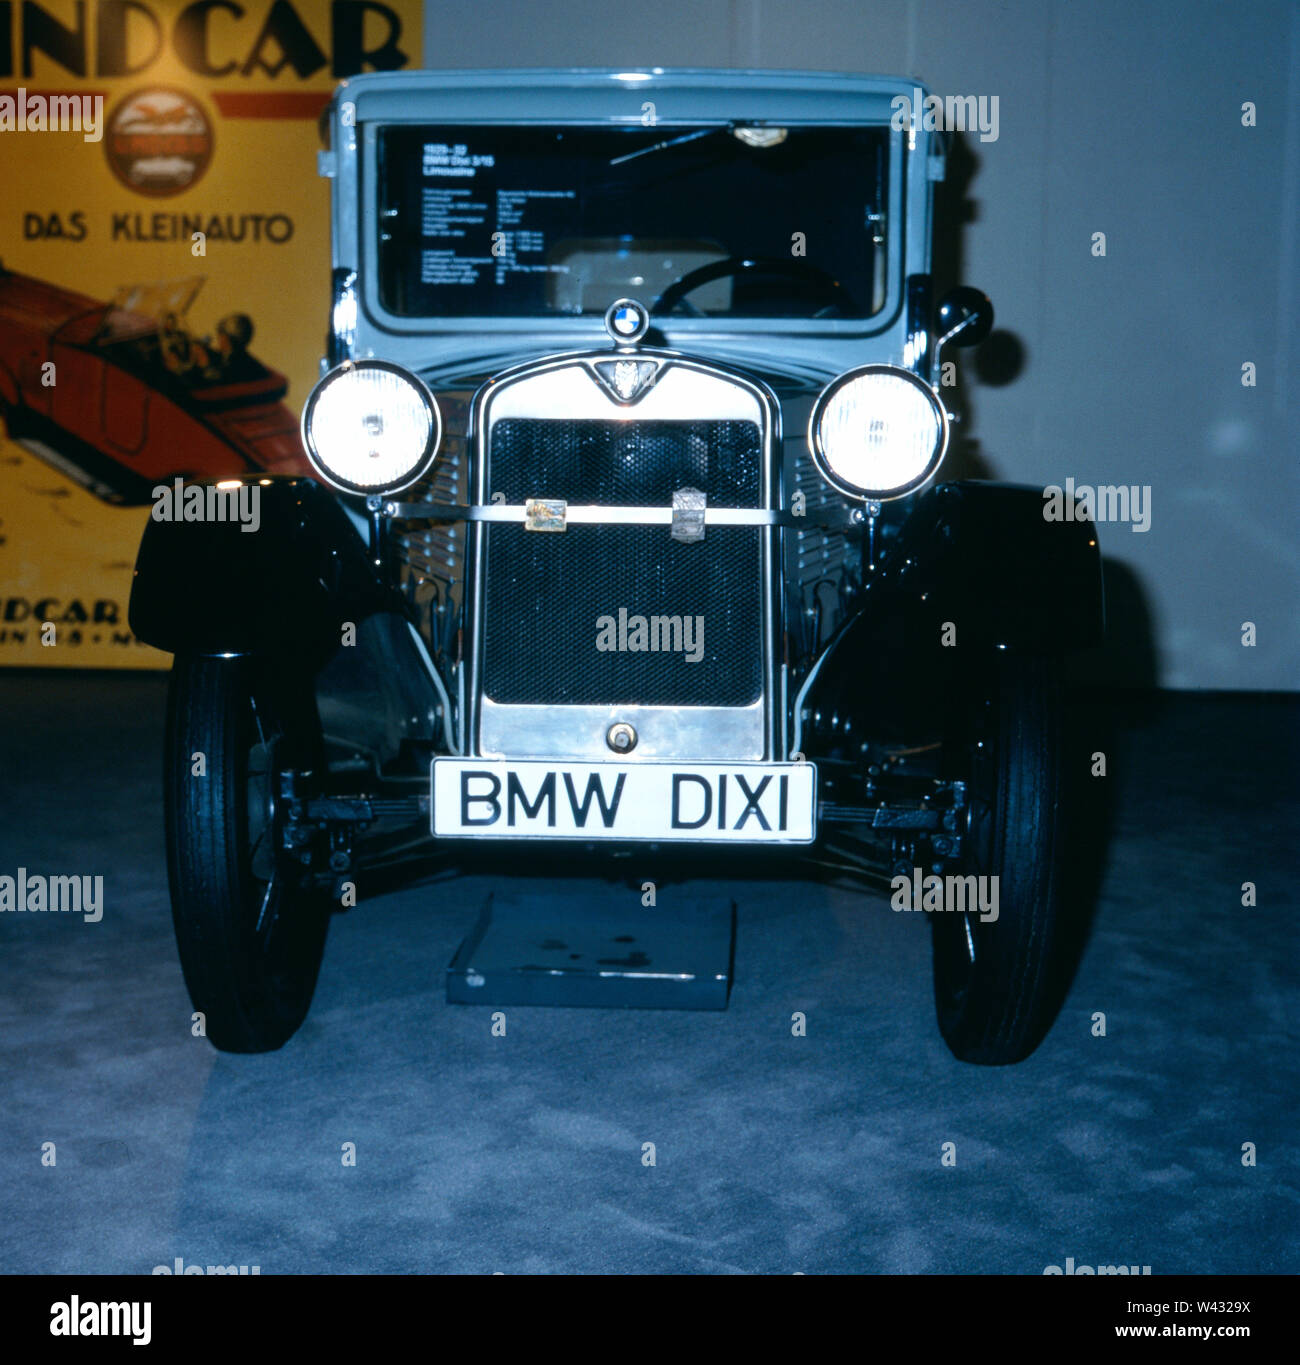 Ein klassischer BMW Dixi aus dem Jahr 1929 während einer Autoshow in München Ende der 1980er Jahre. A classic BMW Dixi from 1929 during a car show in Munich in the late 1980s. Stock Photo